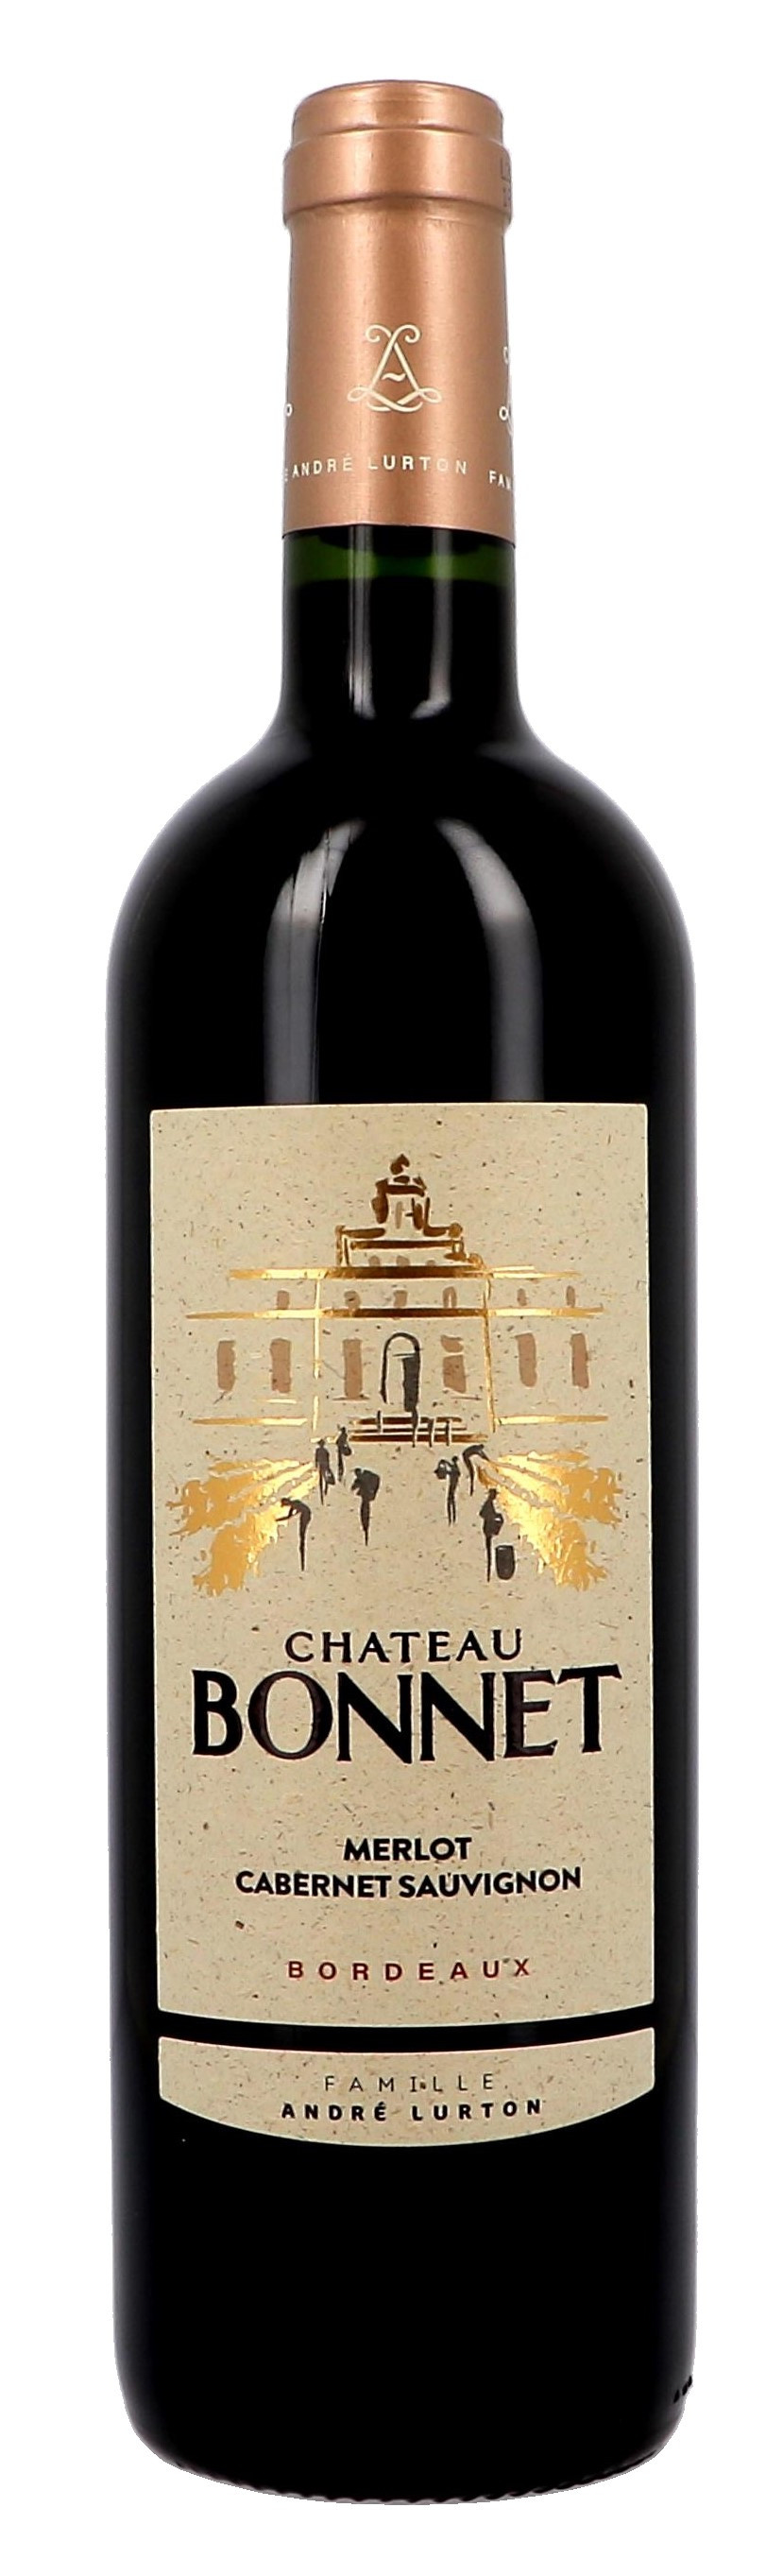 Chateau Bonnet rood 75cl 2015 Bordeaux Andre Lurton (Wijnen)